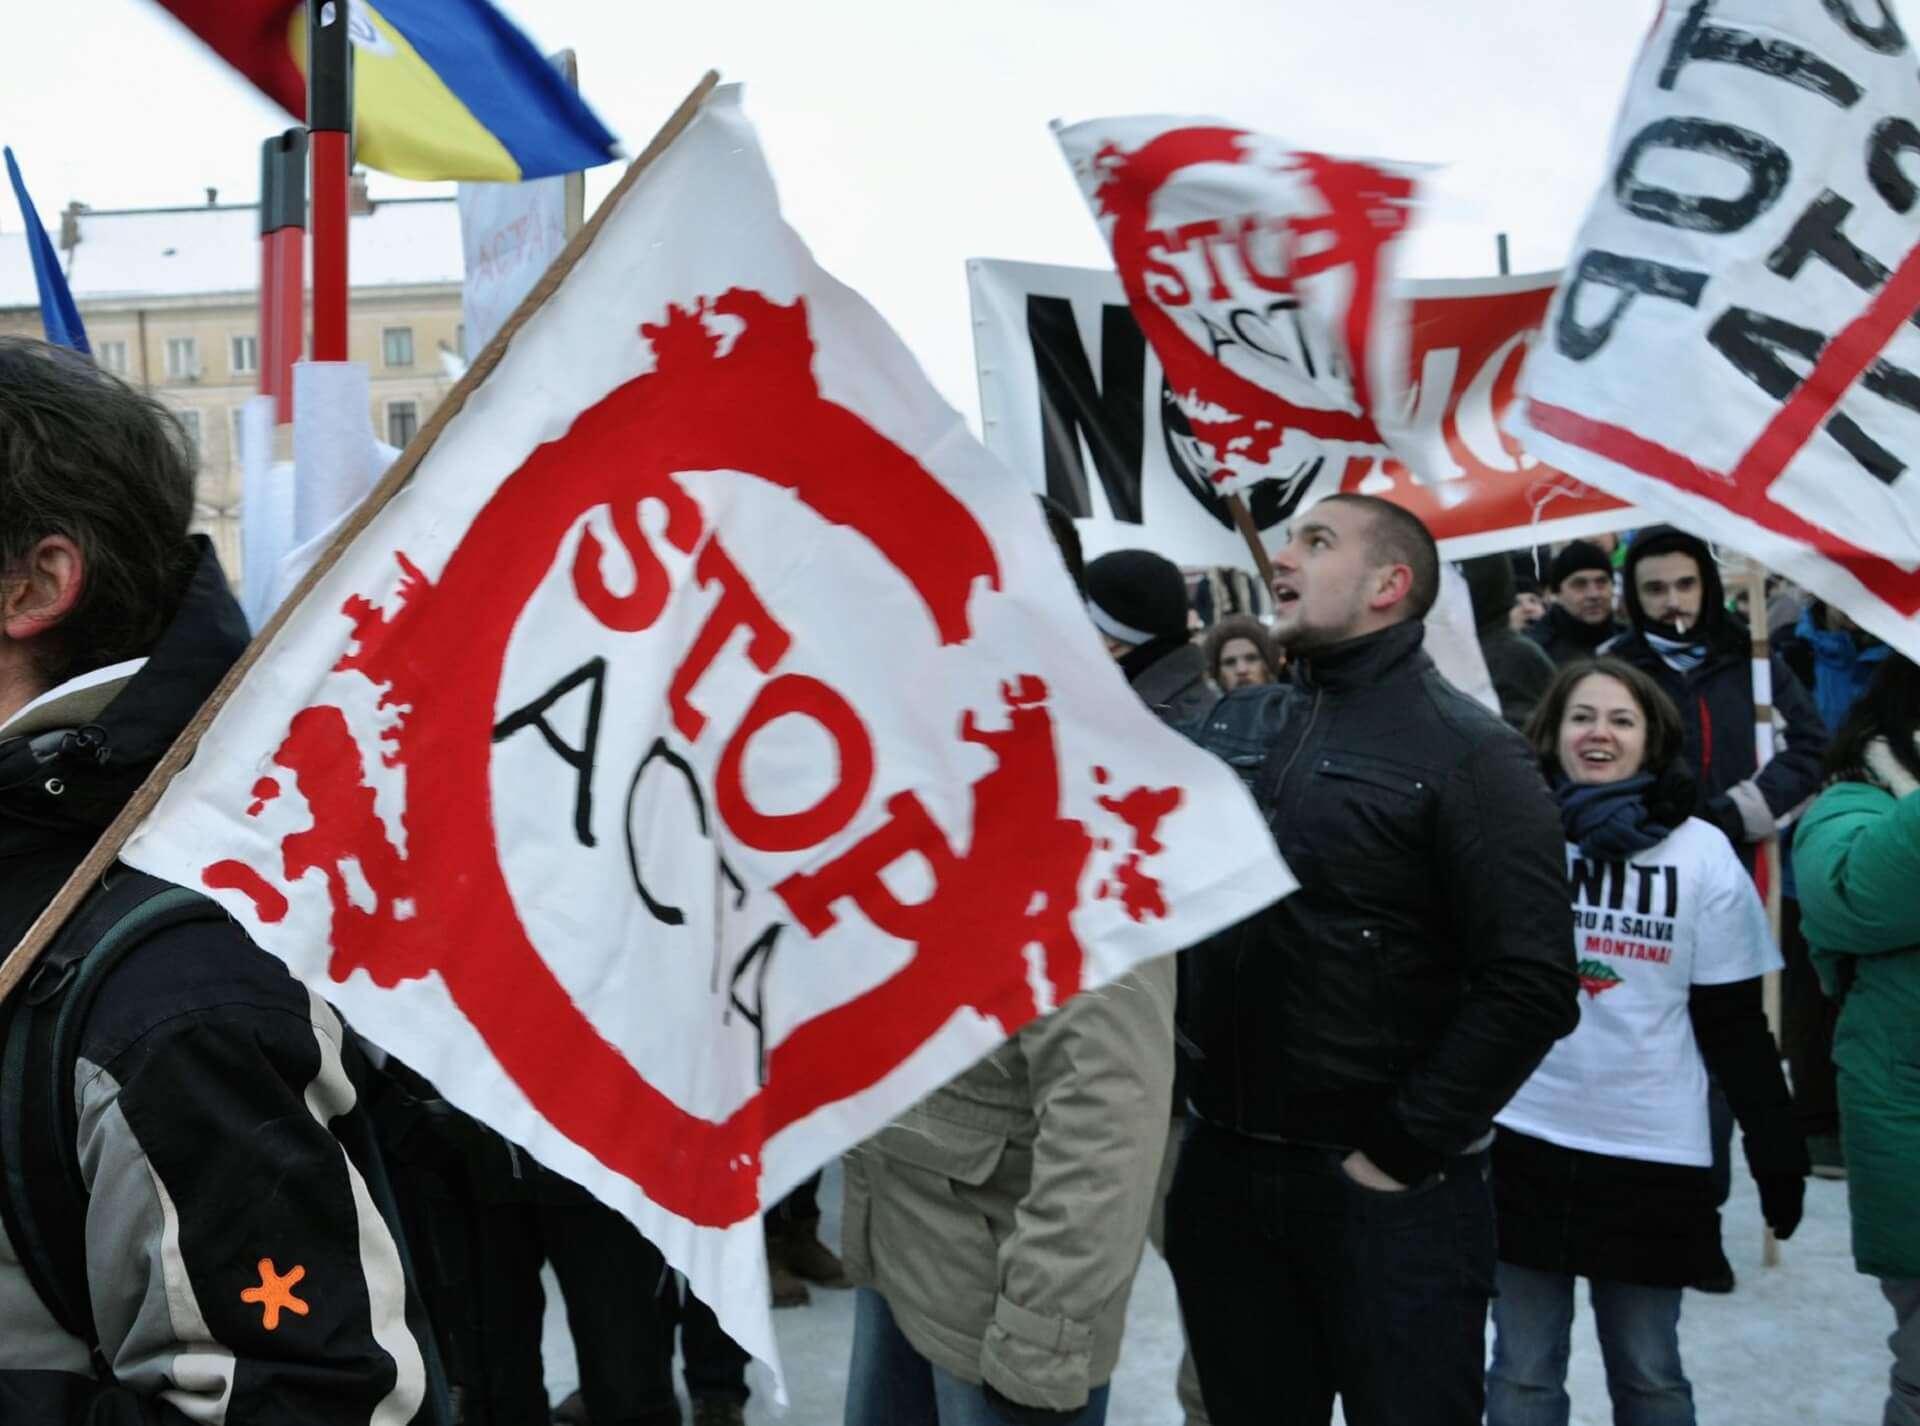 MÓWIMY NIE CENZURZE INTERNETU! – PROTEST PRZECIW #ACTA2